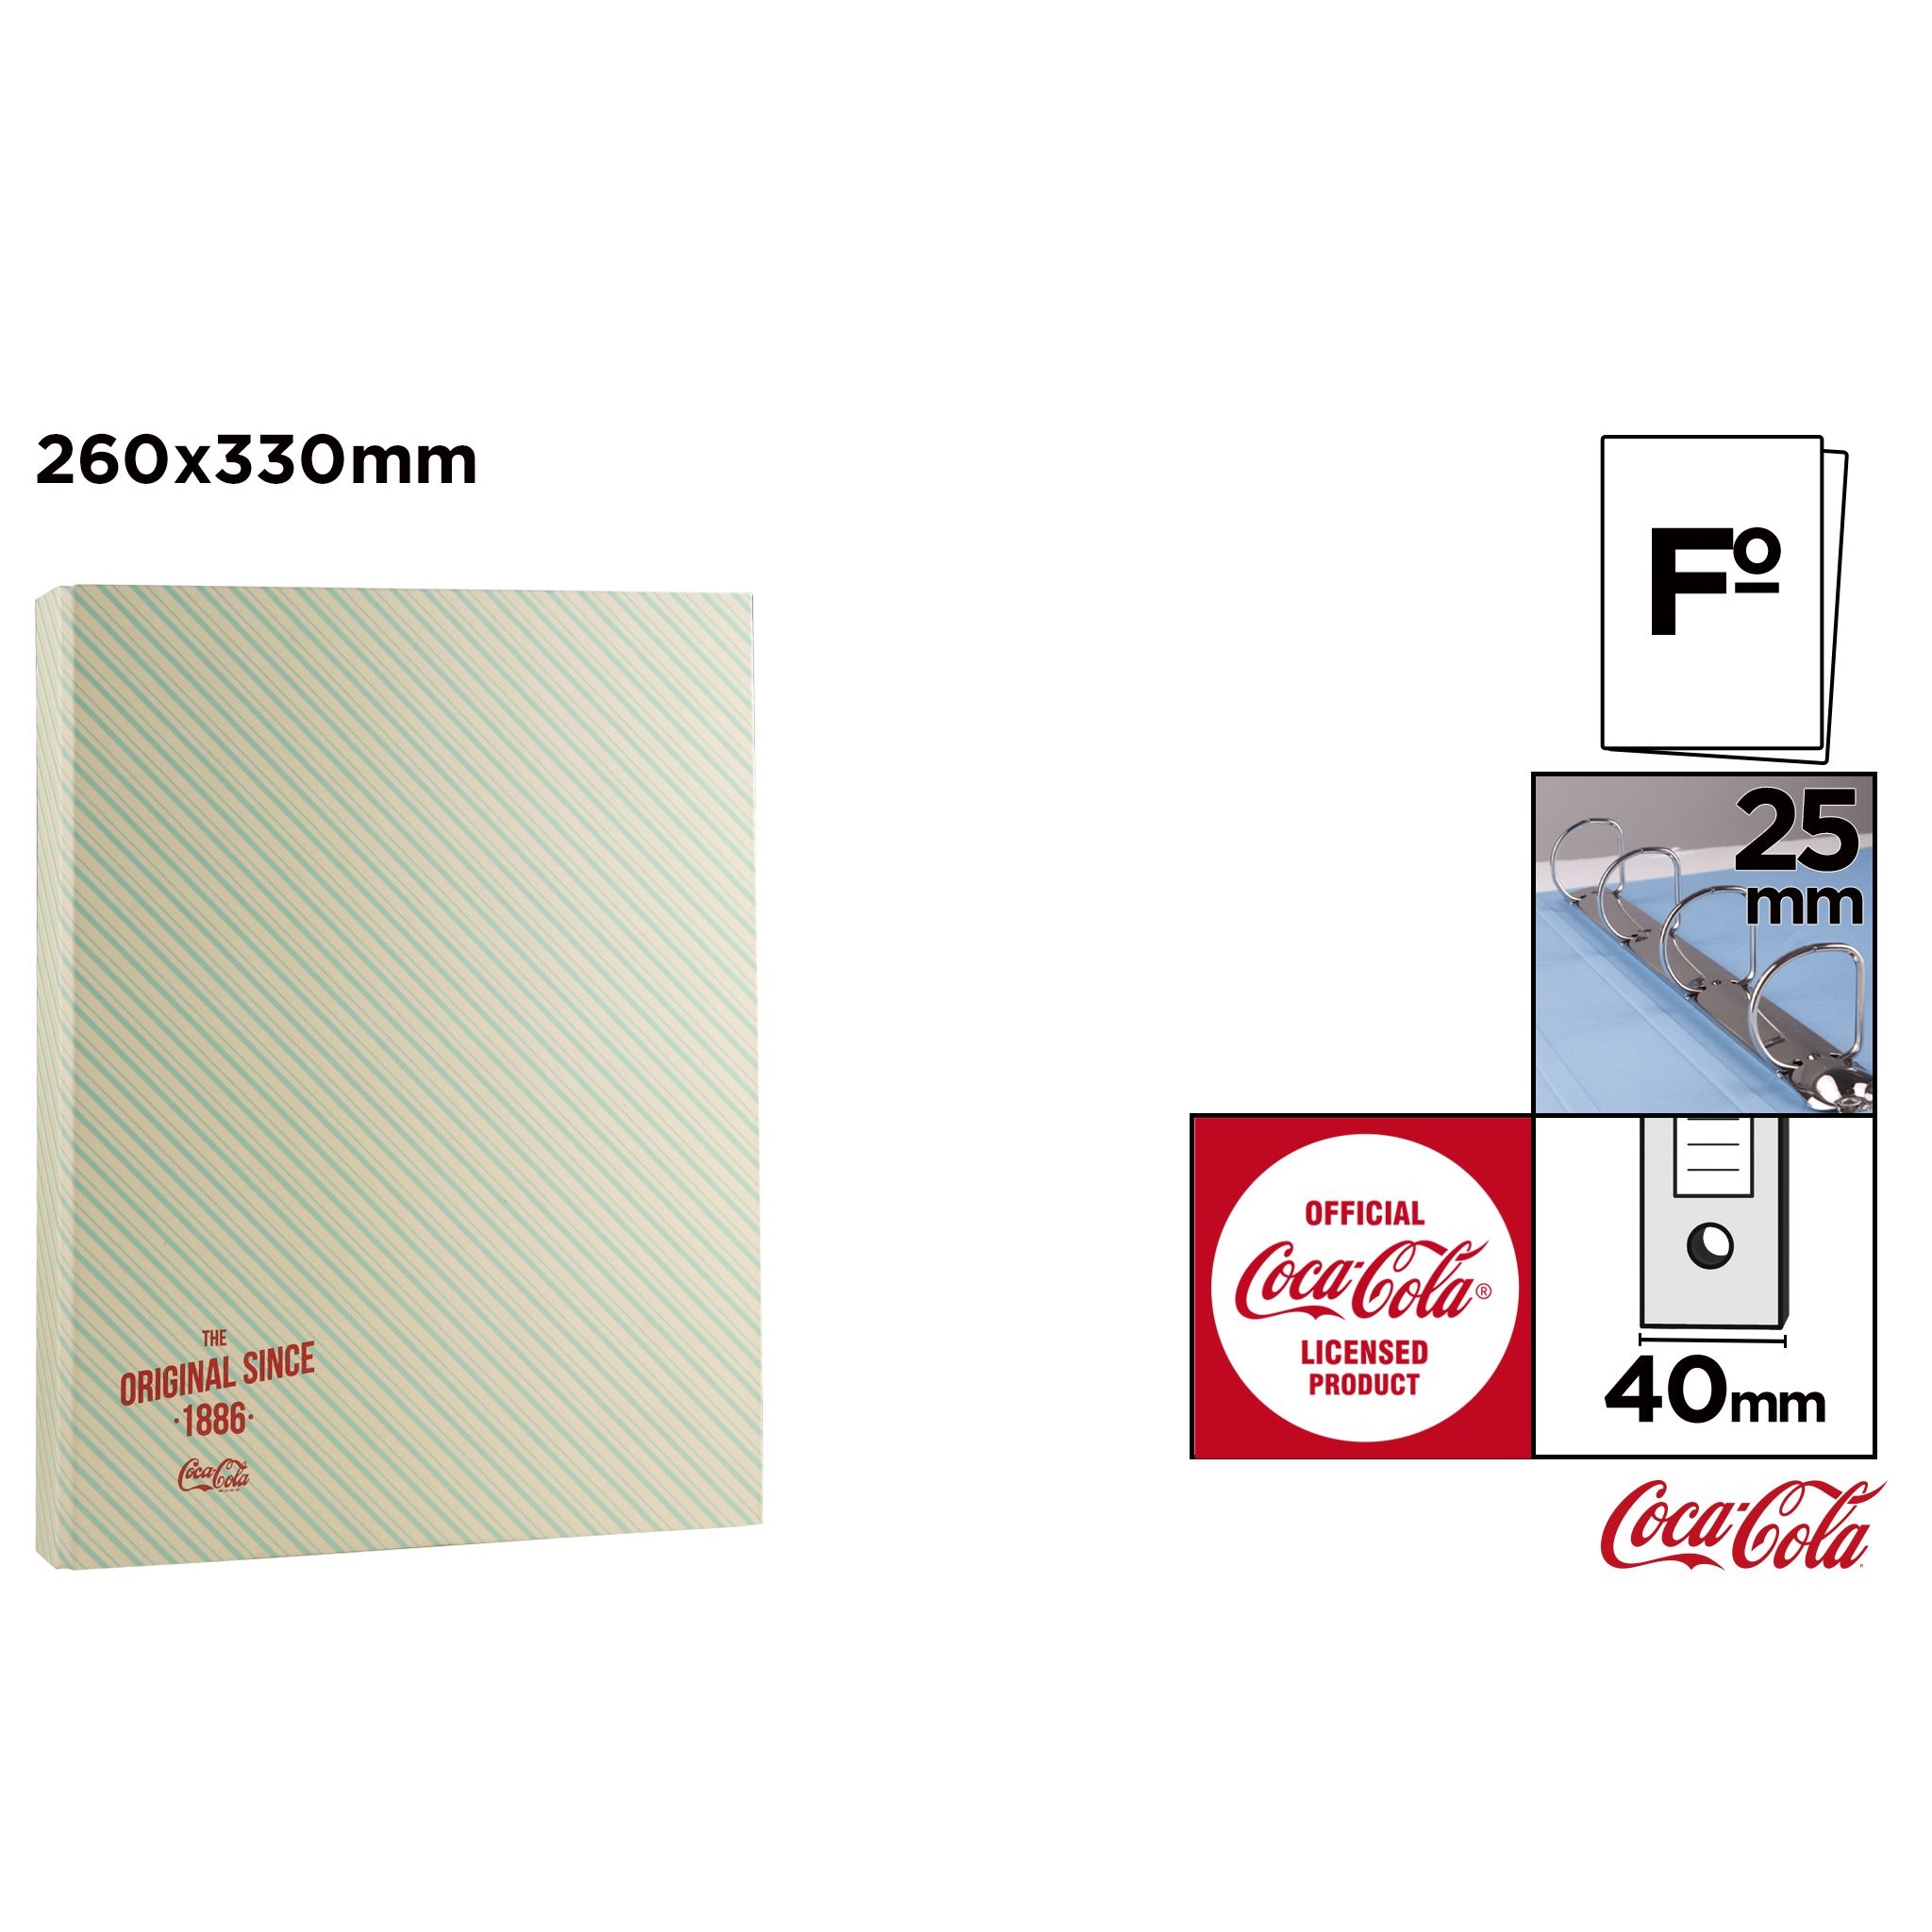 CC010 Coca-Cola Folder File Box Data Organizer